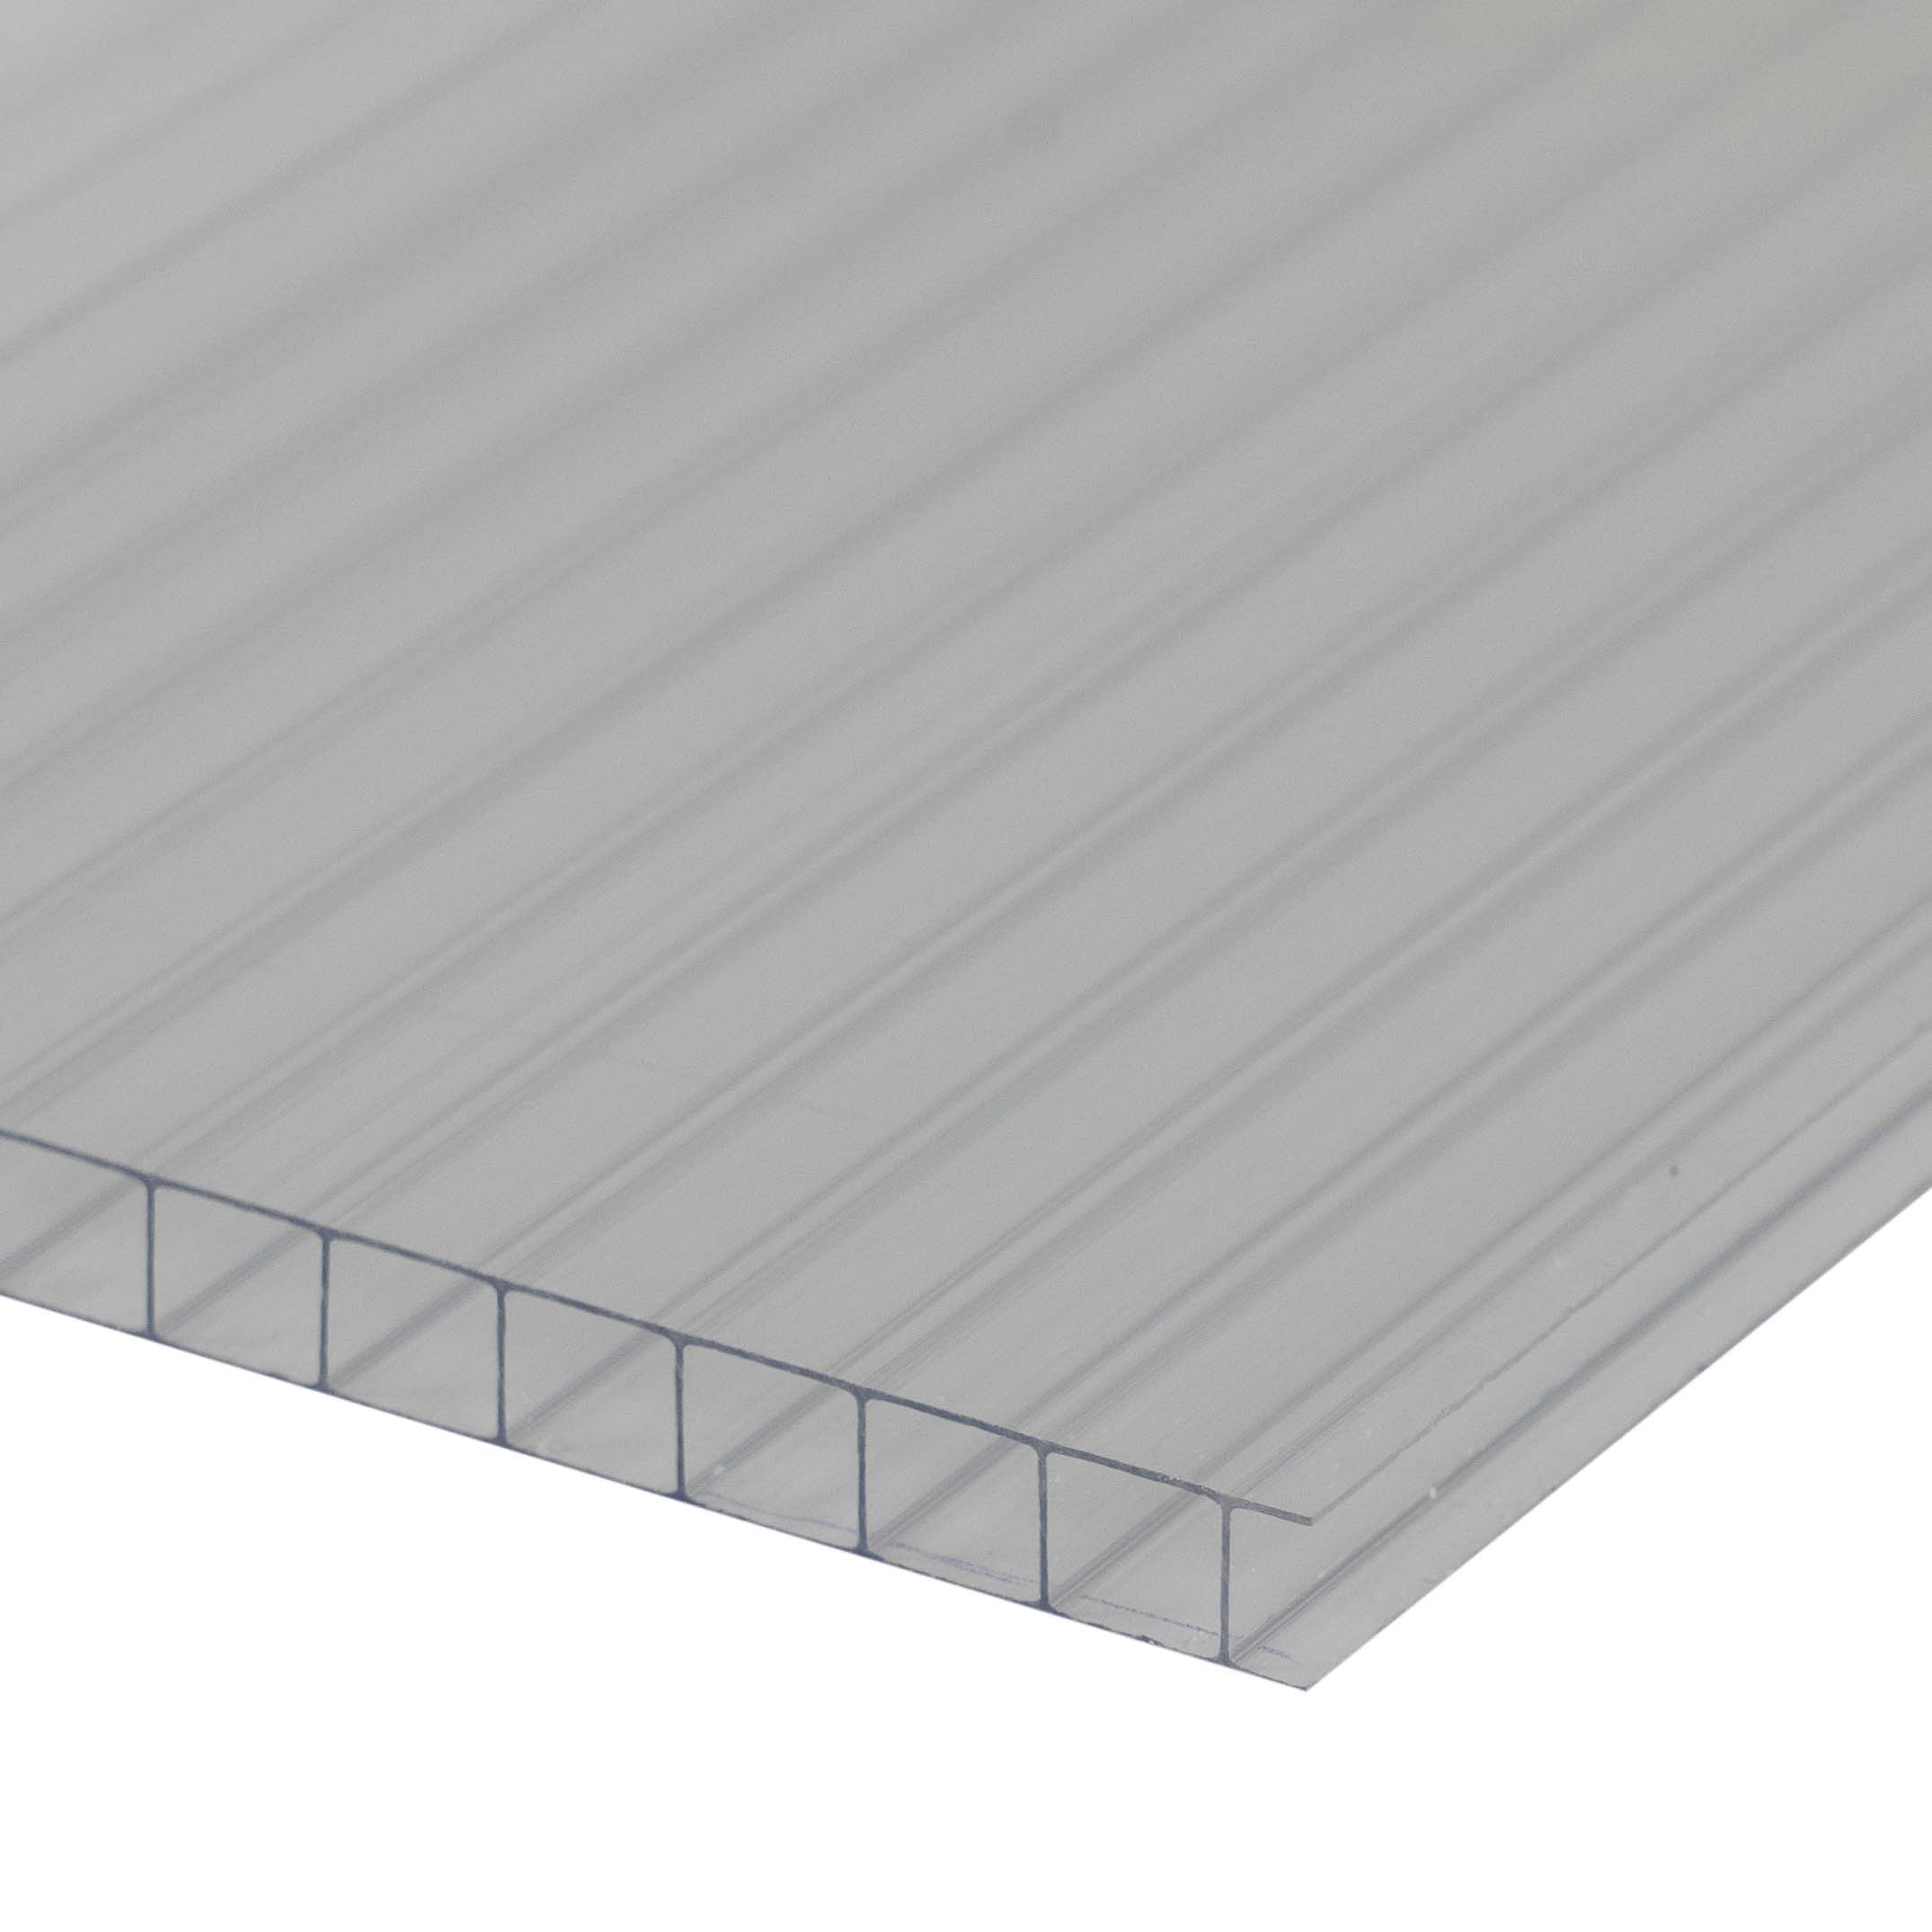 Doppelstegplatte 8 mm Farblos / Klar - Polycarbonat Hohlkammerplatten - Hagelfest 